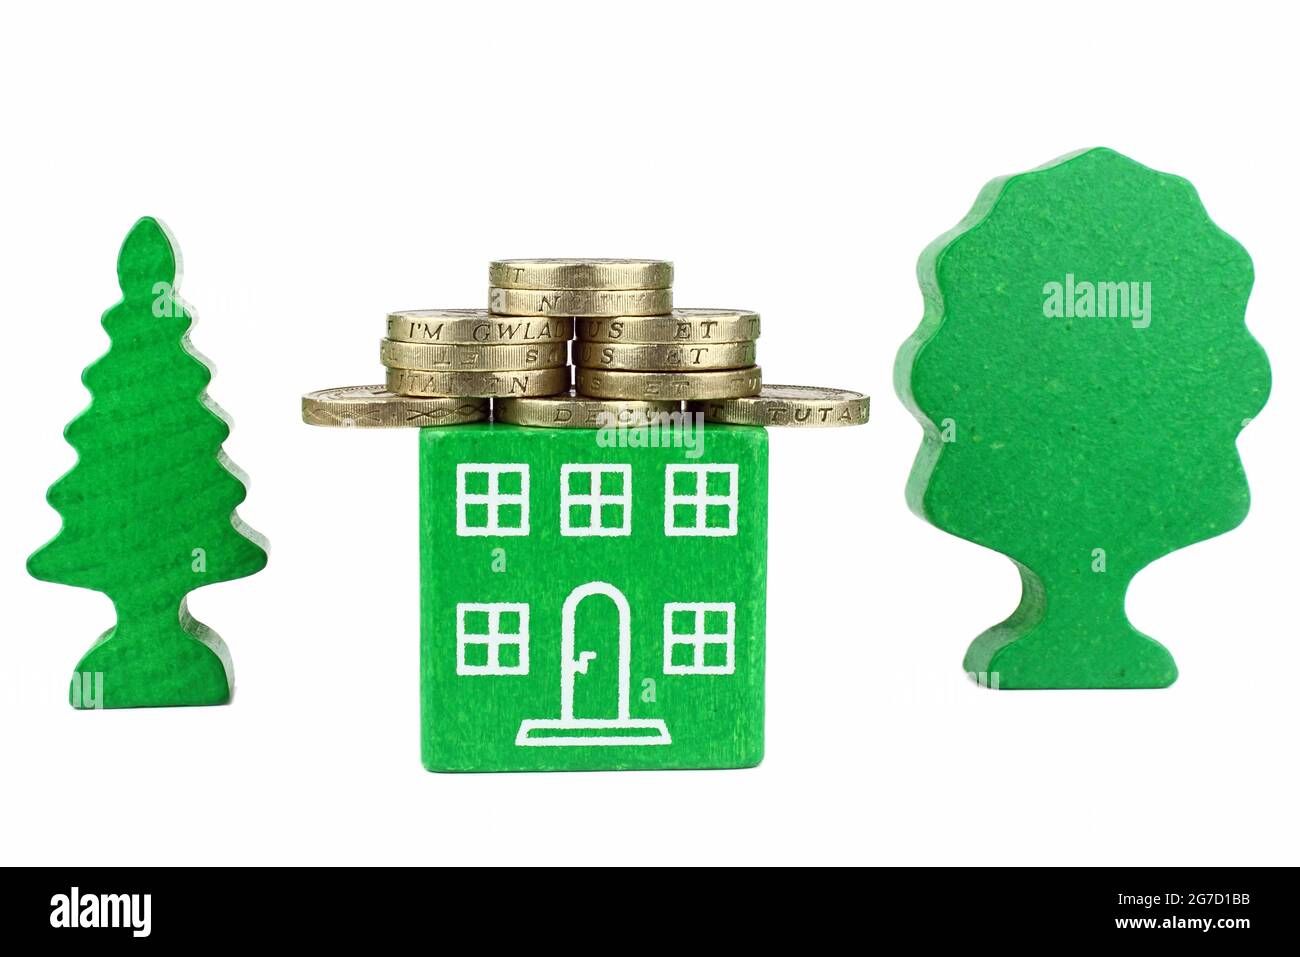 Une maison verte avec des pièces de monnaie pour le toit, représentant des économies à faire avec une maison à économie d'énergie. Banque D'Images